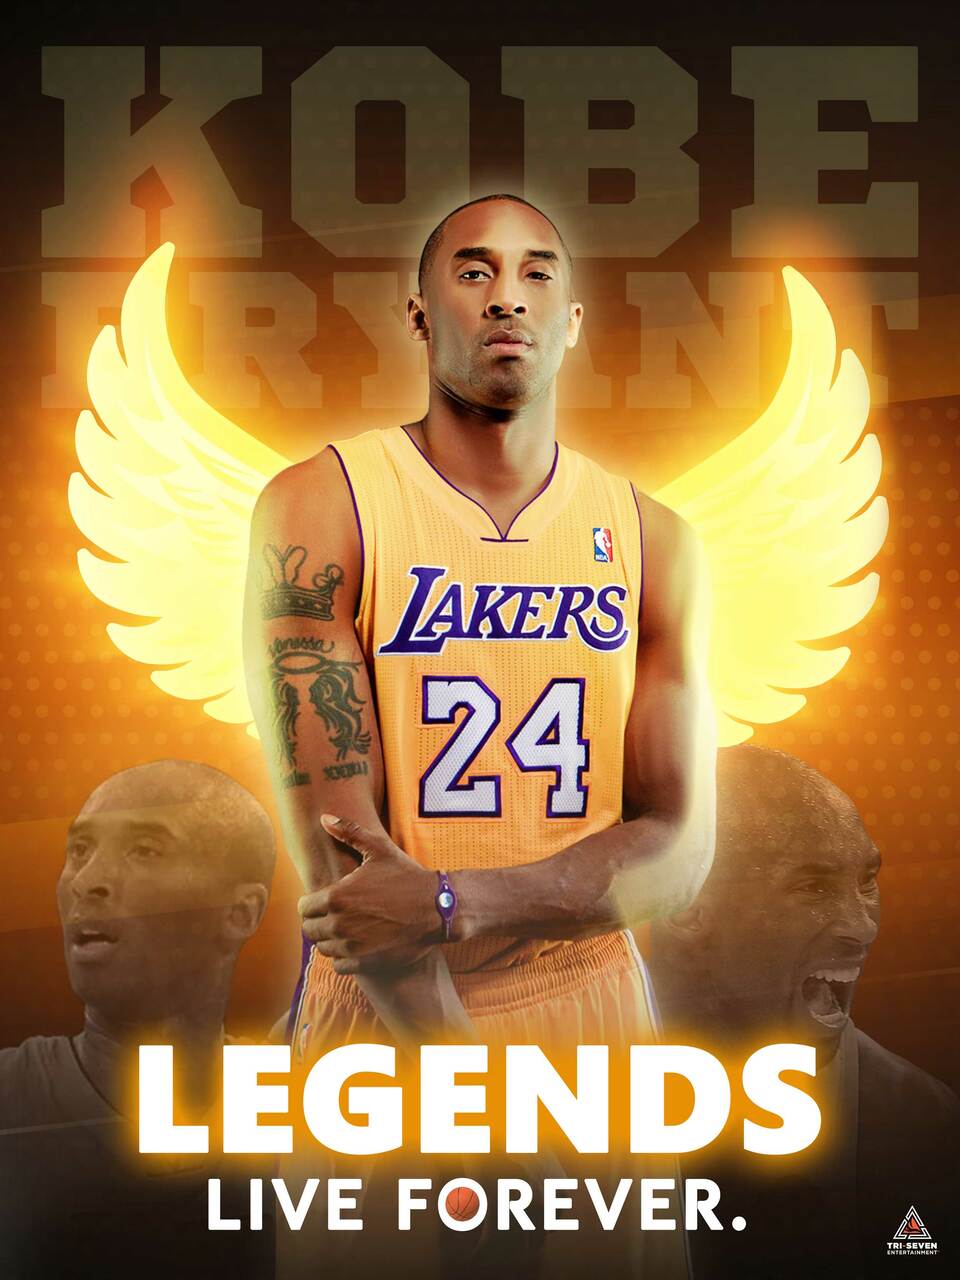 Kobe Bryant poster-legends live forever